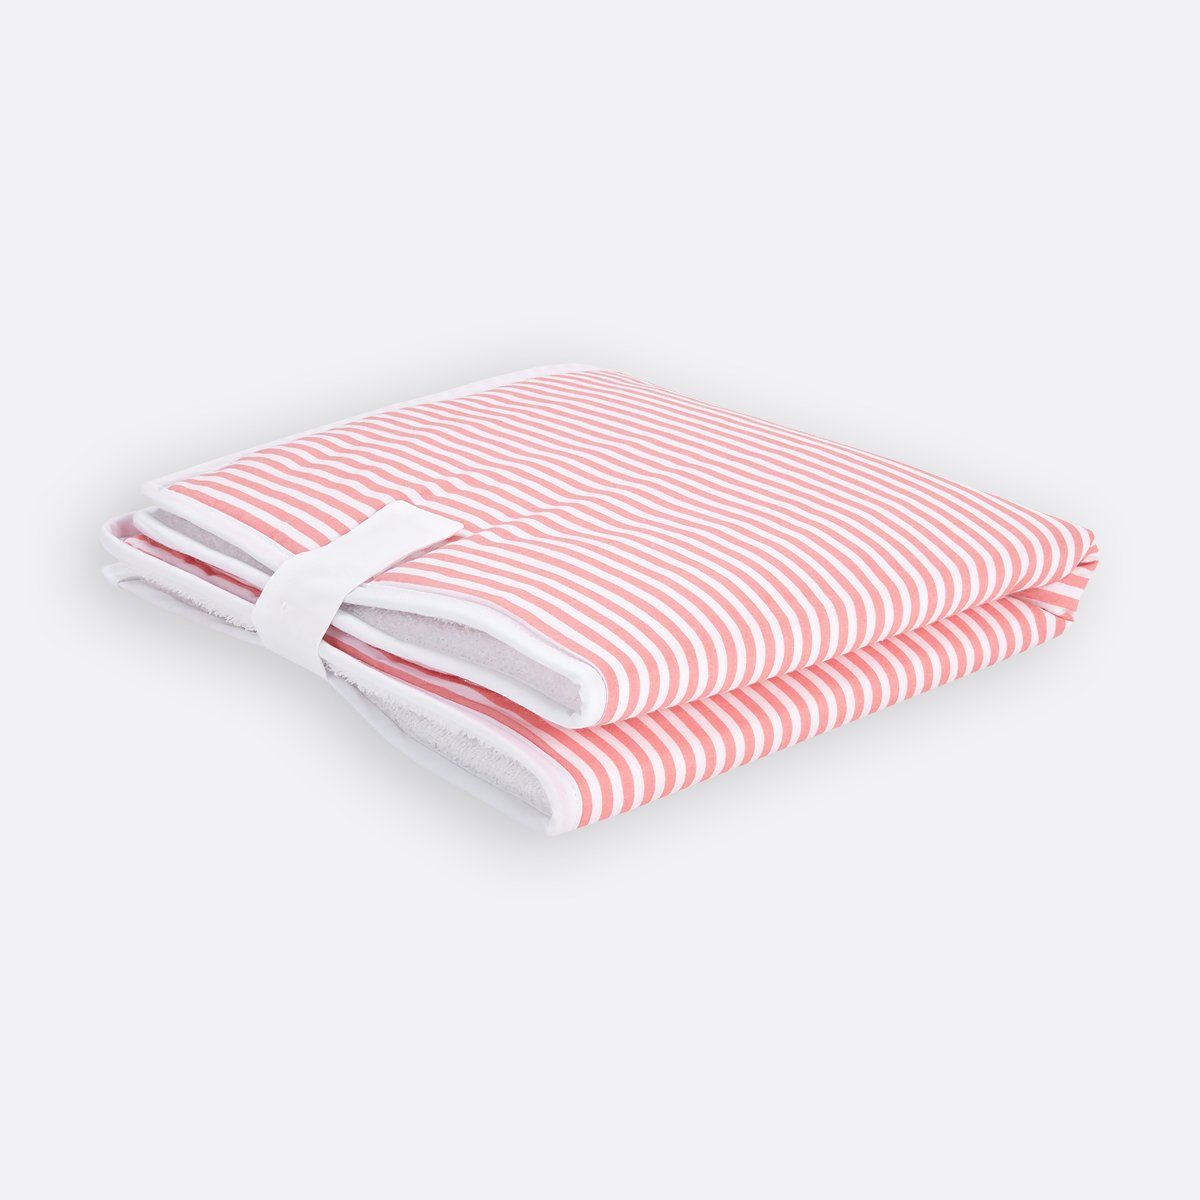 KraftKids Wickelauflage Streifen rosa, Reisewickelunterlage aus 3 Stoffsichten, 100% Baumwolle, Innen wasserundurchlässig, faltbar mit Klettverschluss